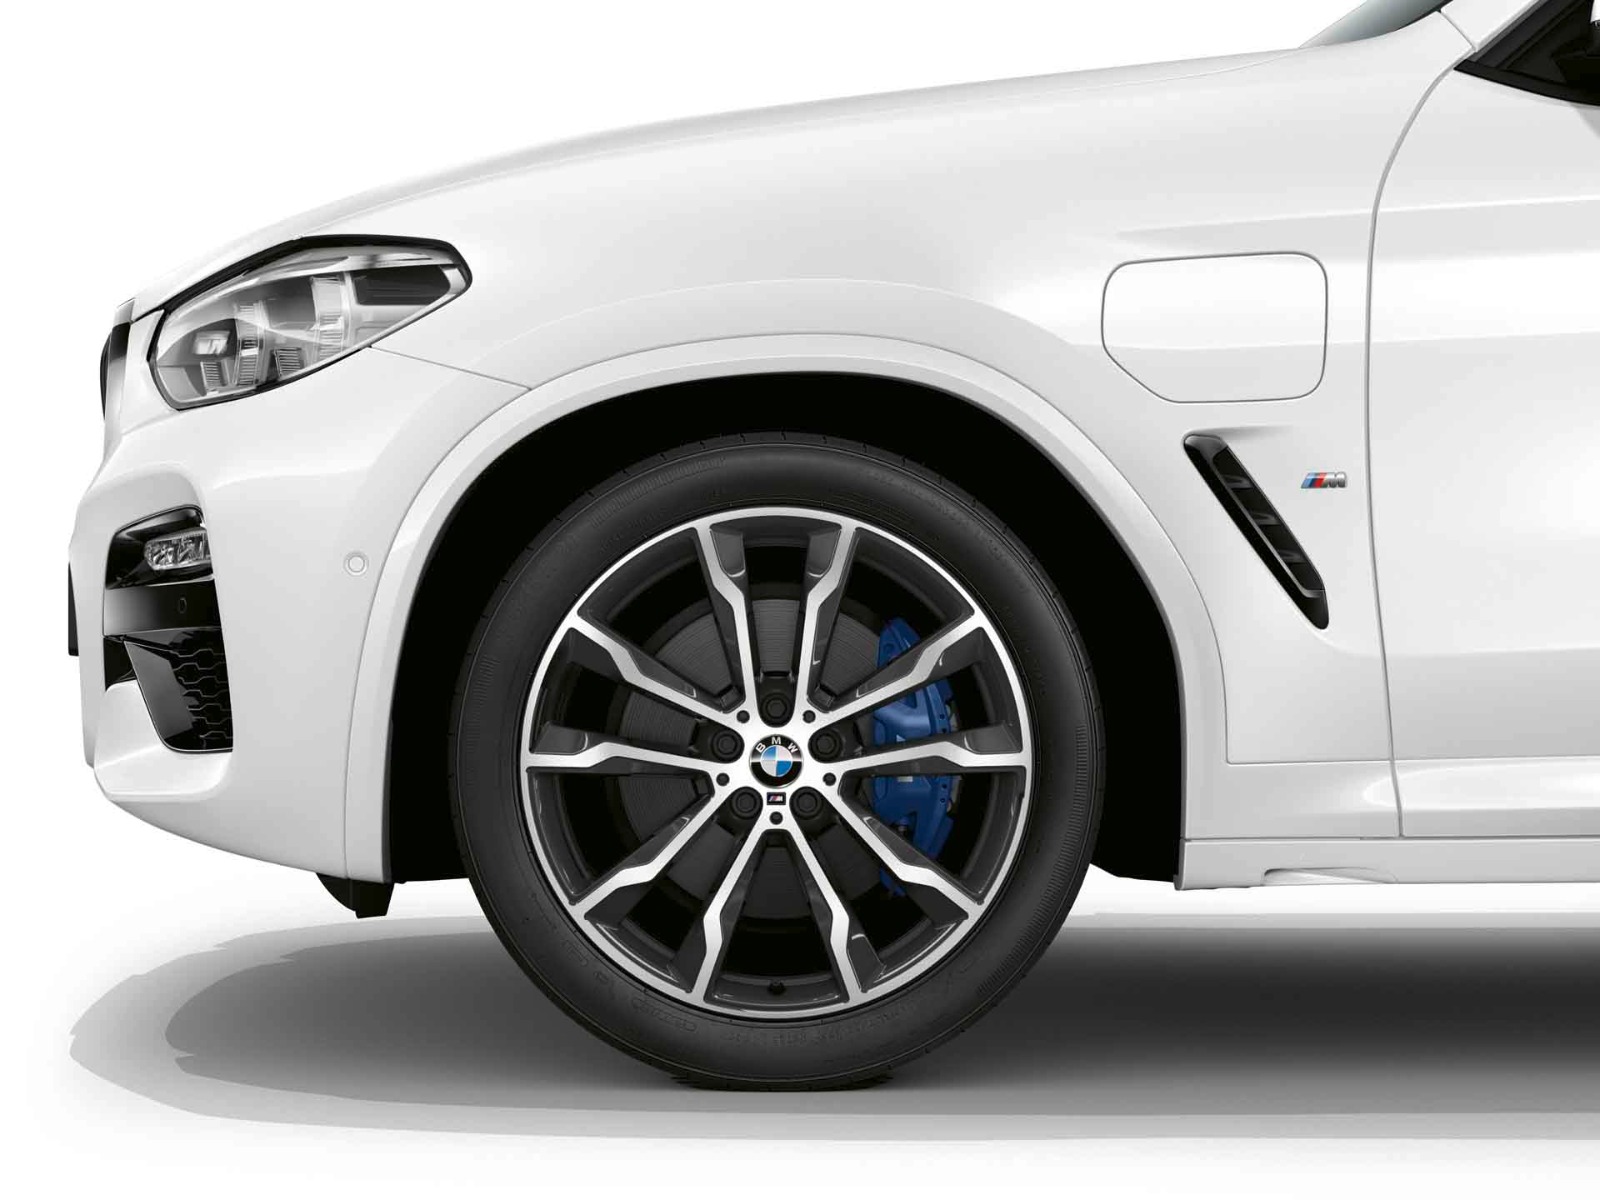 BMW Winterkompletträder M Doppelspeiche 699M orbit grey/hochglanzpoliert 20  Zoll RDCi X3 G01 X4 G02 Pirelli (Mischbereifung)